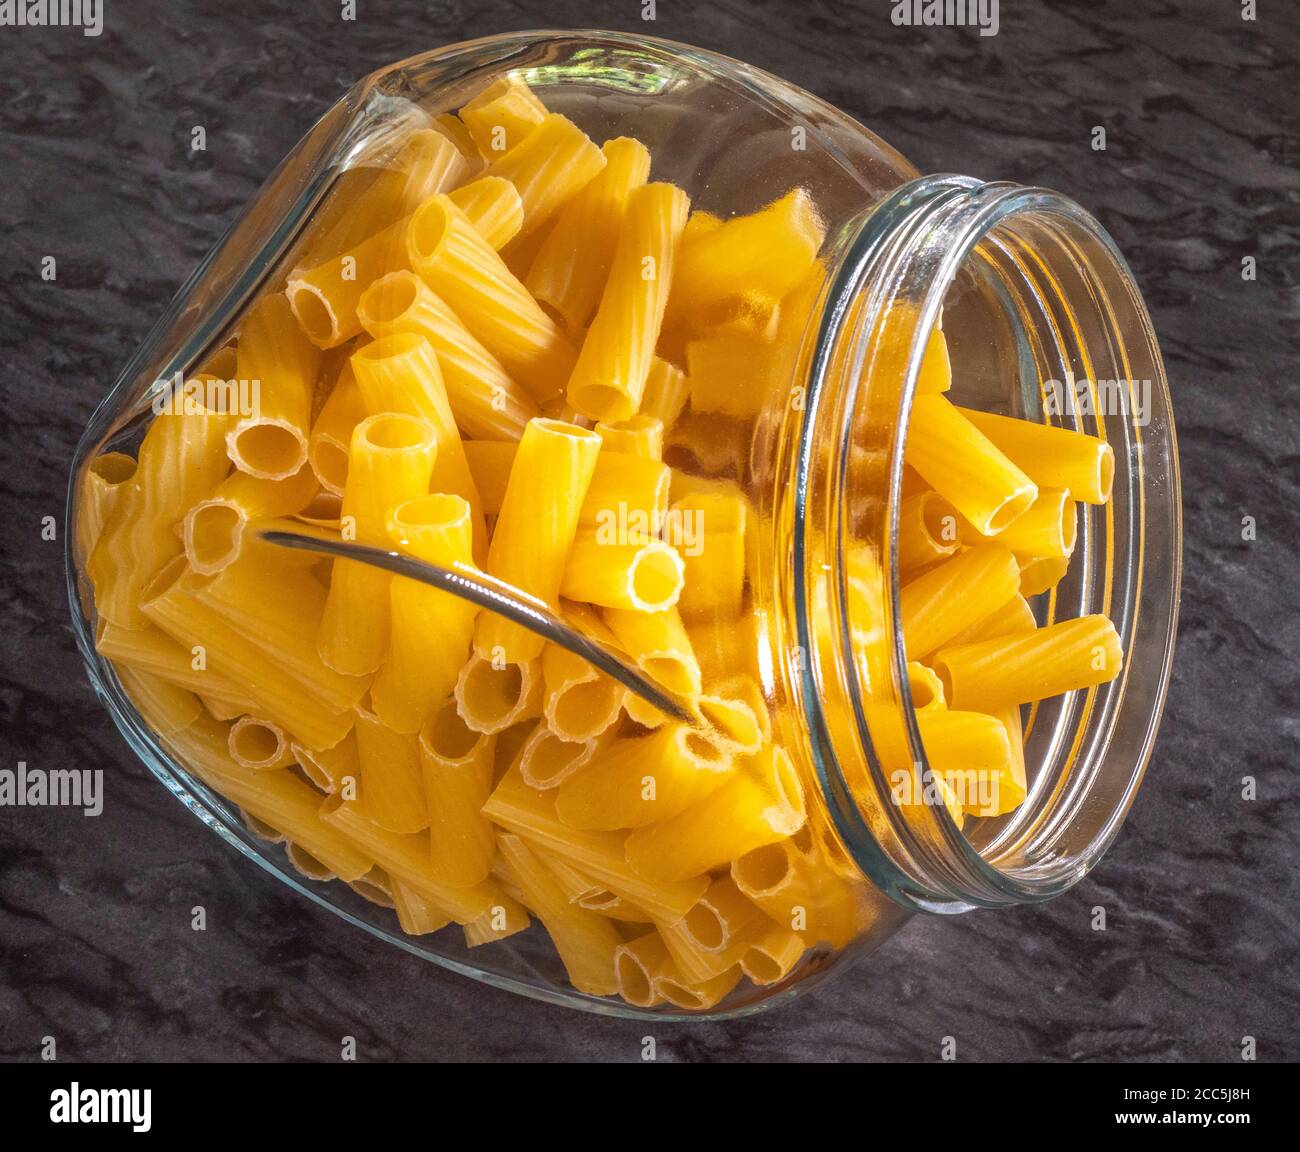 Gros plan de pâtes semoule de blé dur italien sec - rigatoni en forme de tube - dans un pot de conservation en verre. Banque D'Images